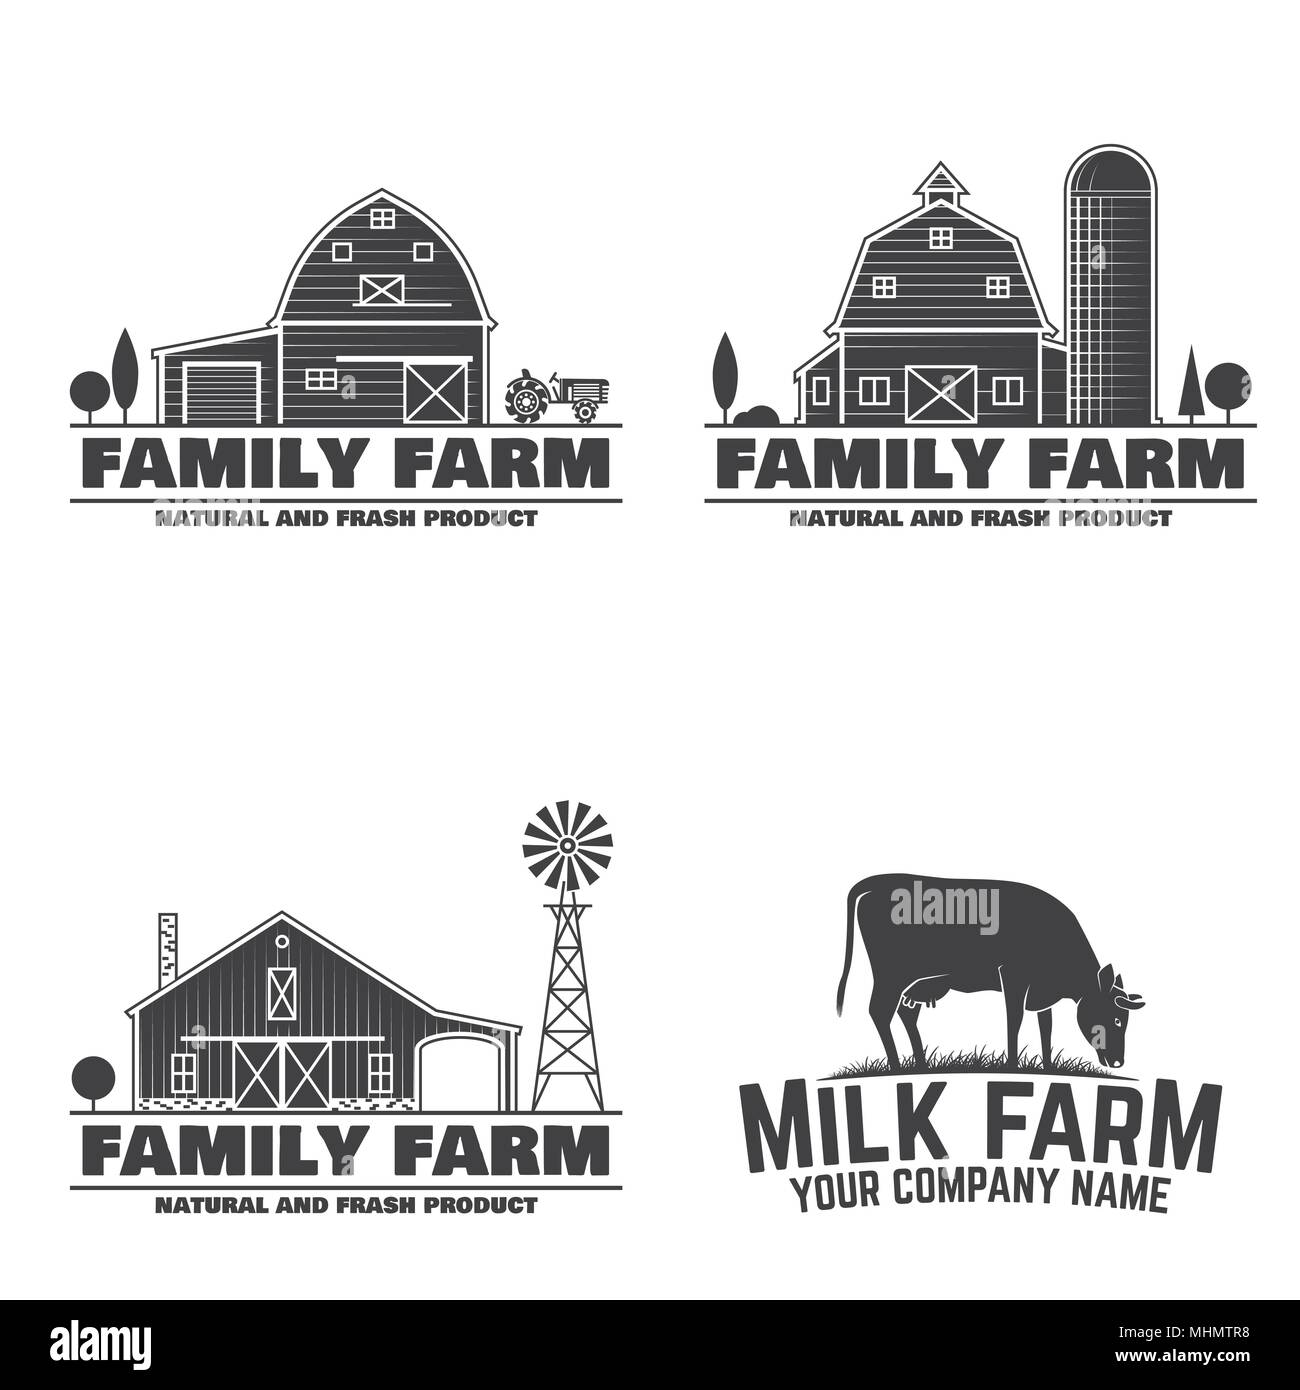 Fattoria di famiglia e latte di fattoria o badge etichette. Illustrazione Vettoriale. Vintage design tipografia con latte di mucca e di farm barn silhouette. Gli elementi sul tema dell'azienda agricola. Illustrazione Vettoriale